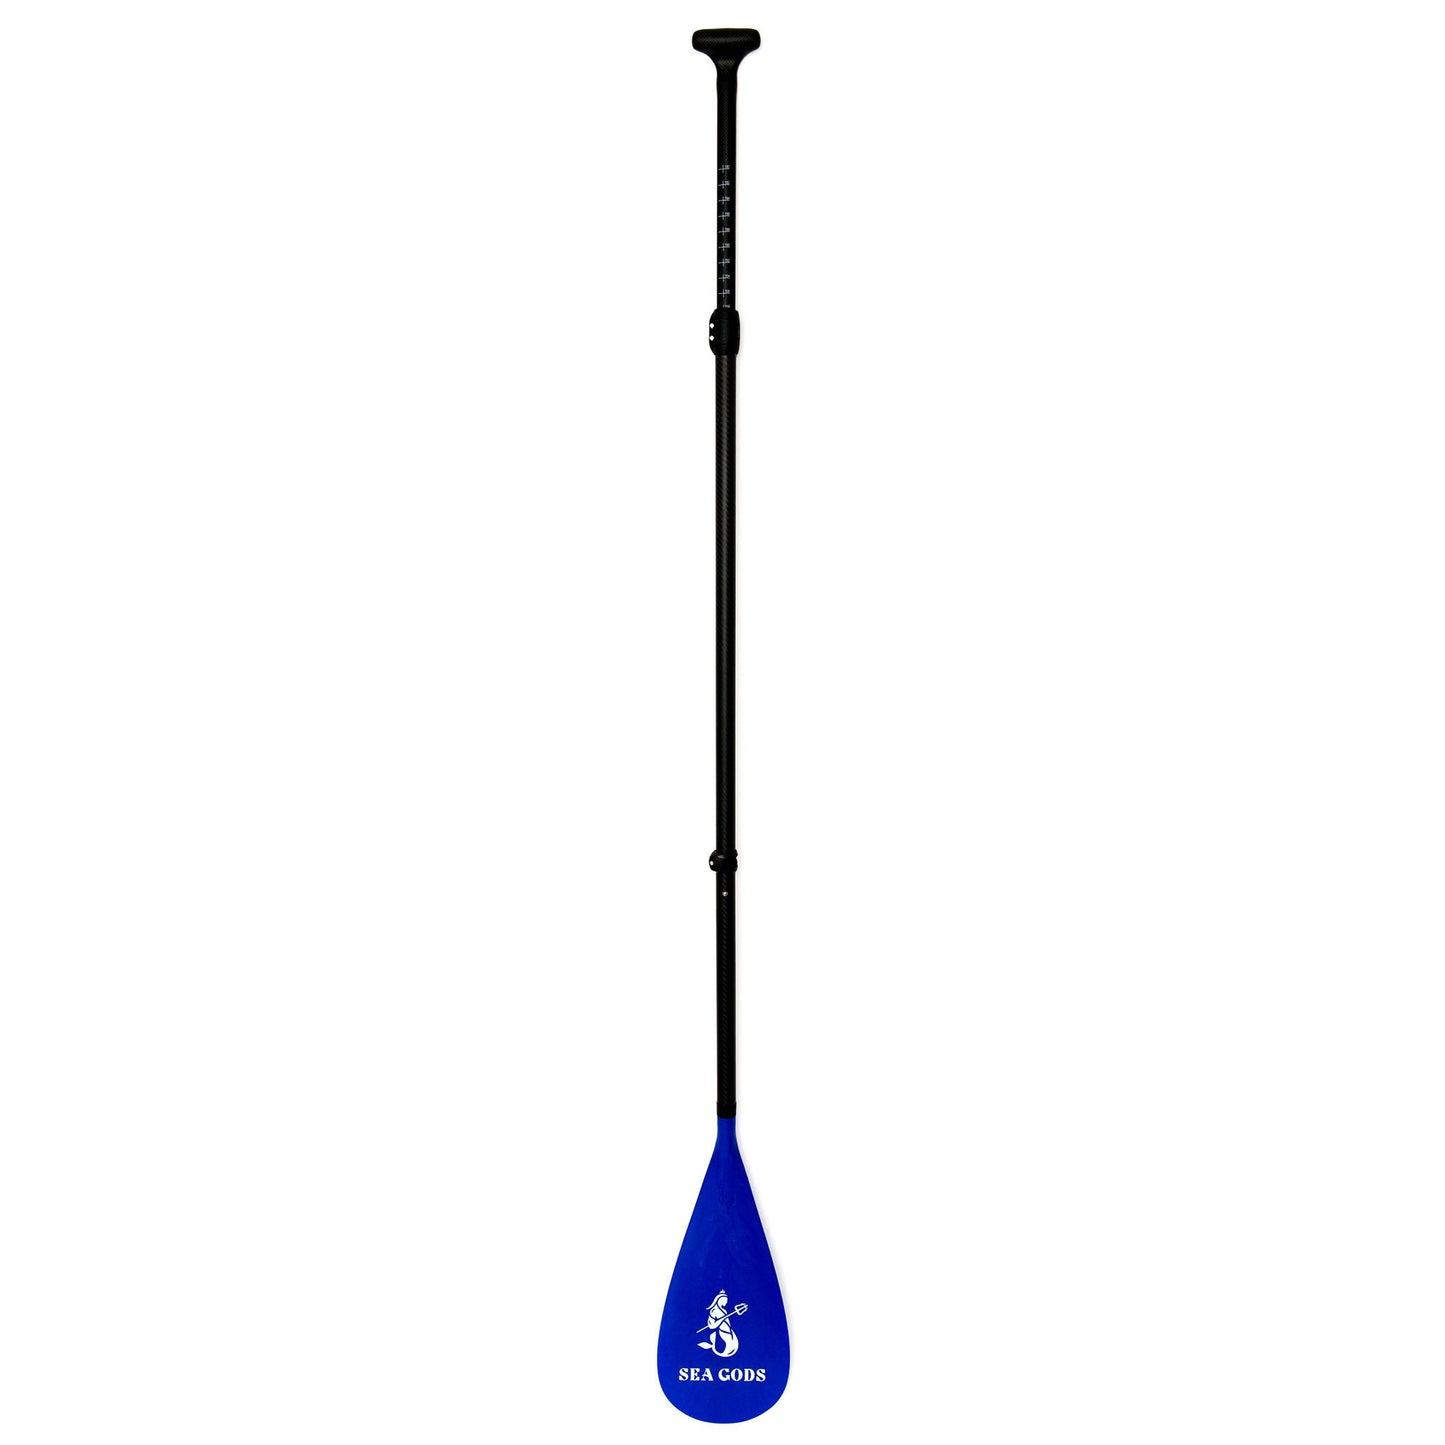 Carta Marina adjustable SUP Paddle - Paddle handle/shaft length 36.5-81 inches